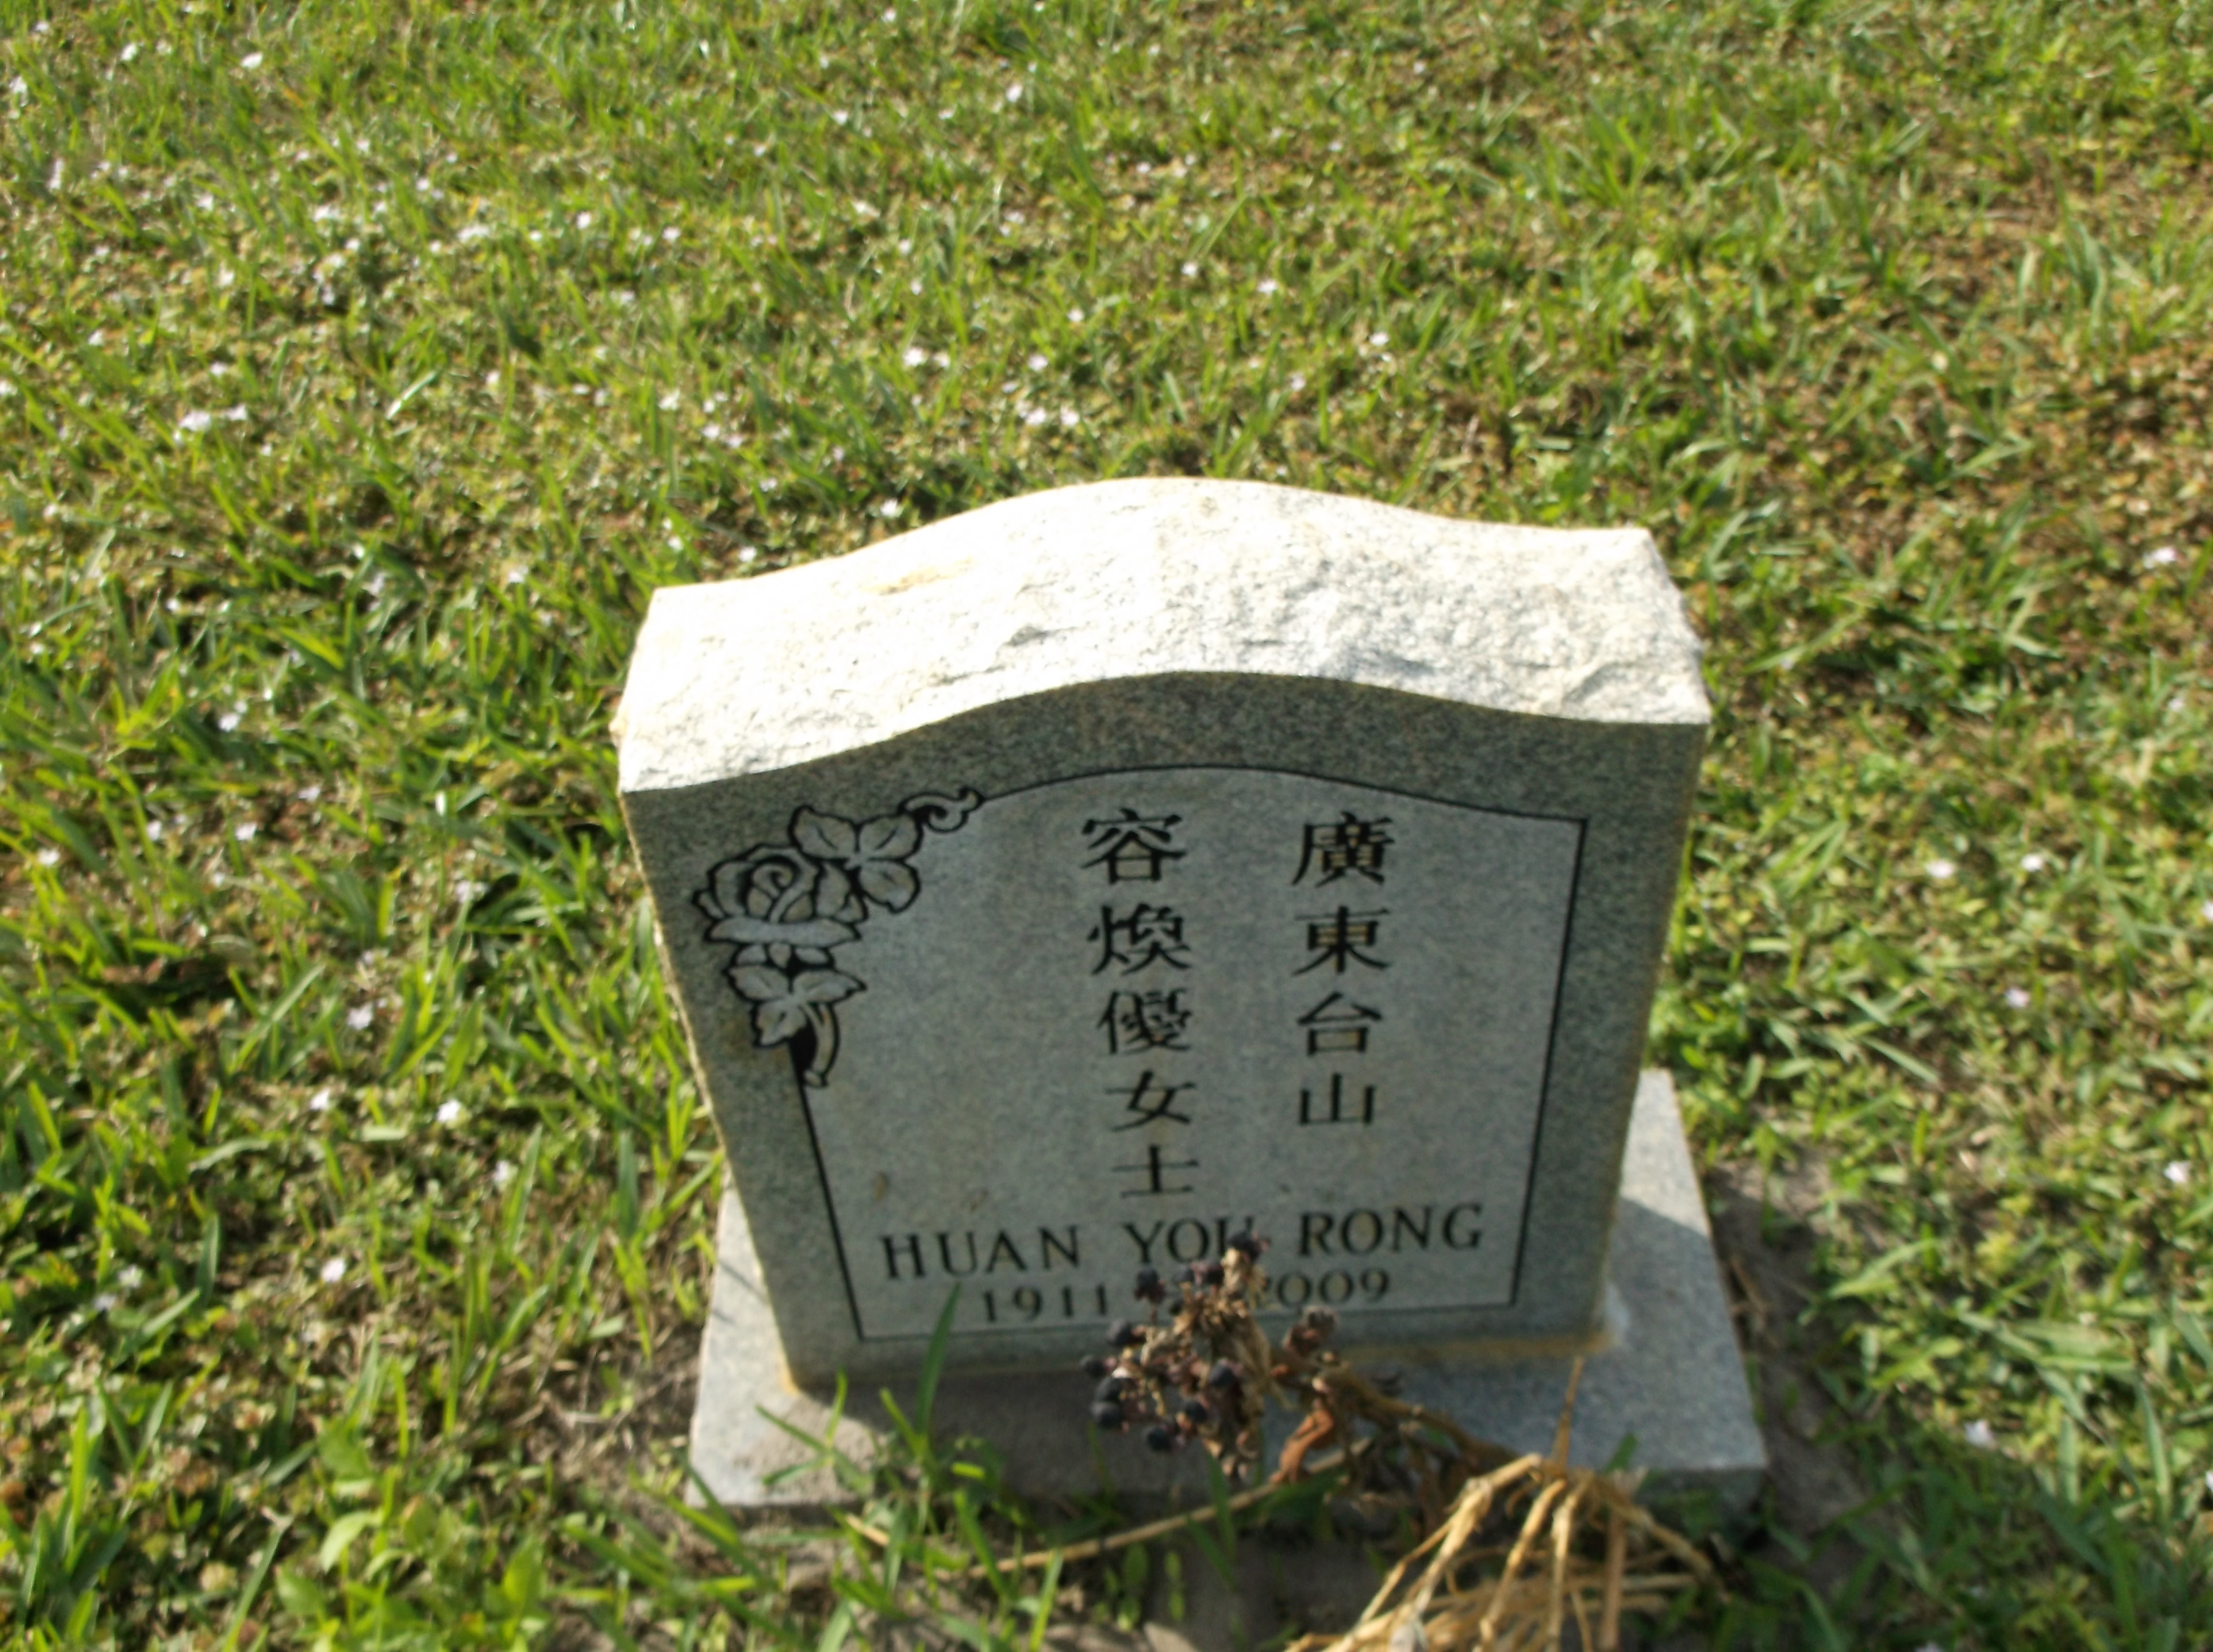 Huan Yok Rong